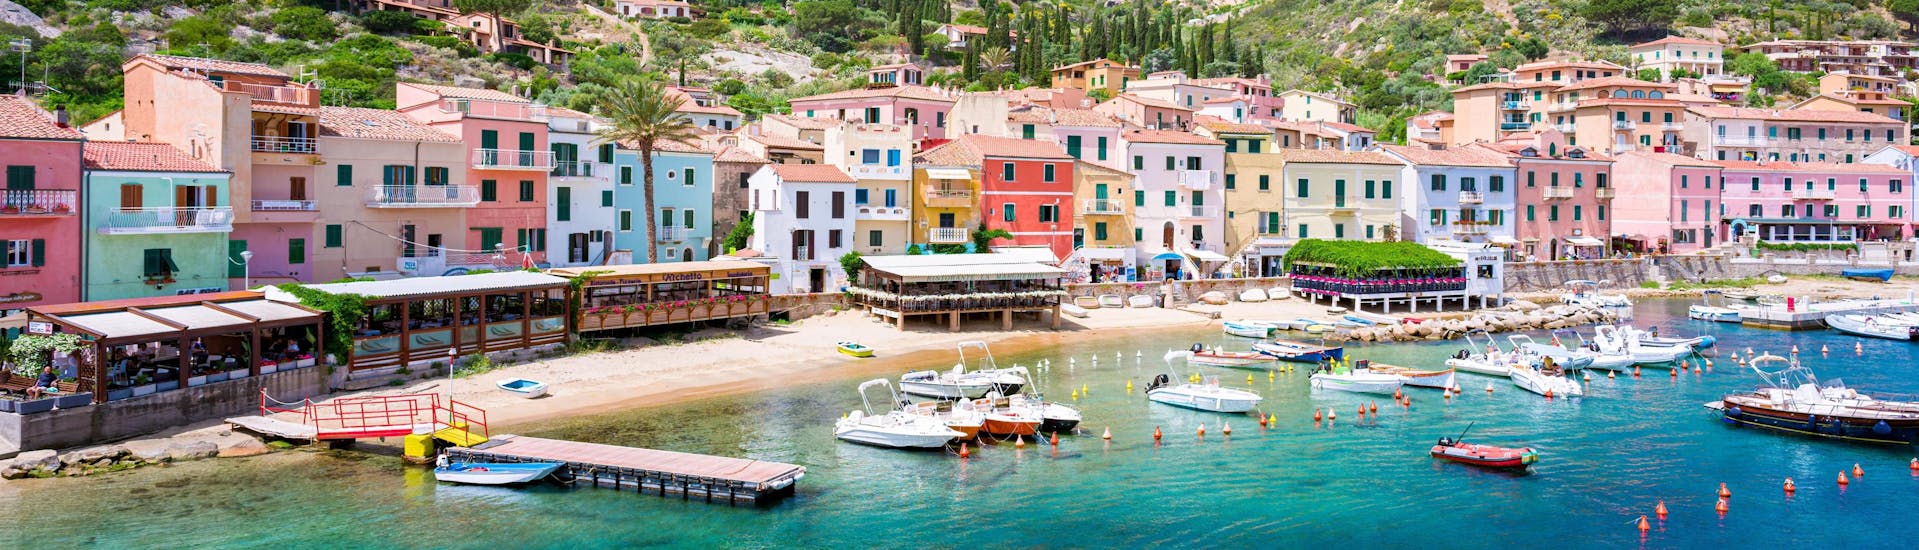 Vista del puerto de Giglio, un bello lugar que puede visitar durante un paseo en barco por el archipiélago toscano.